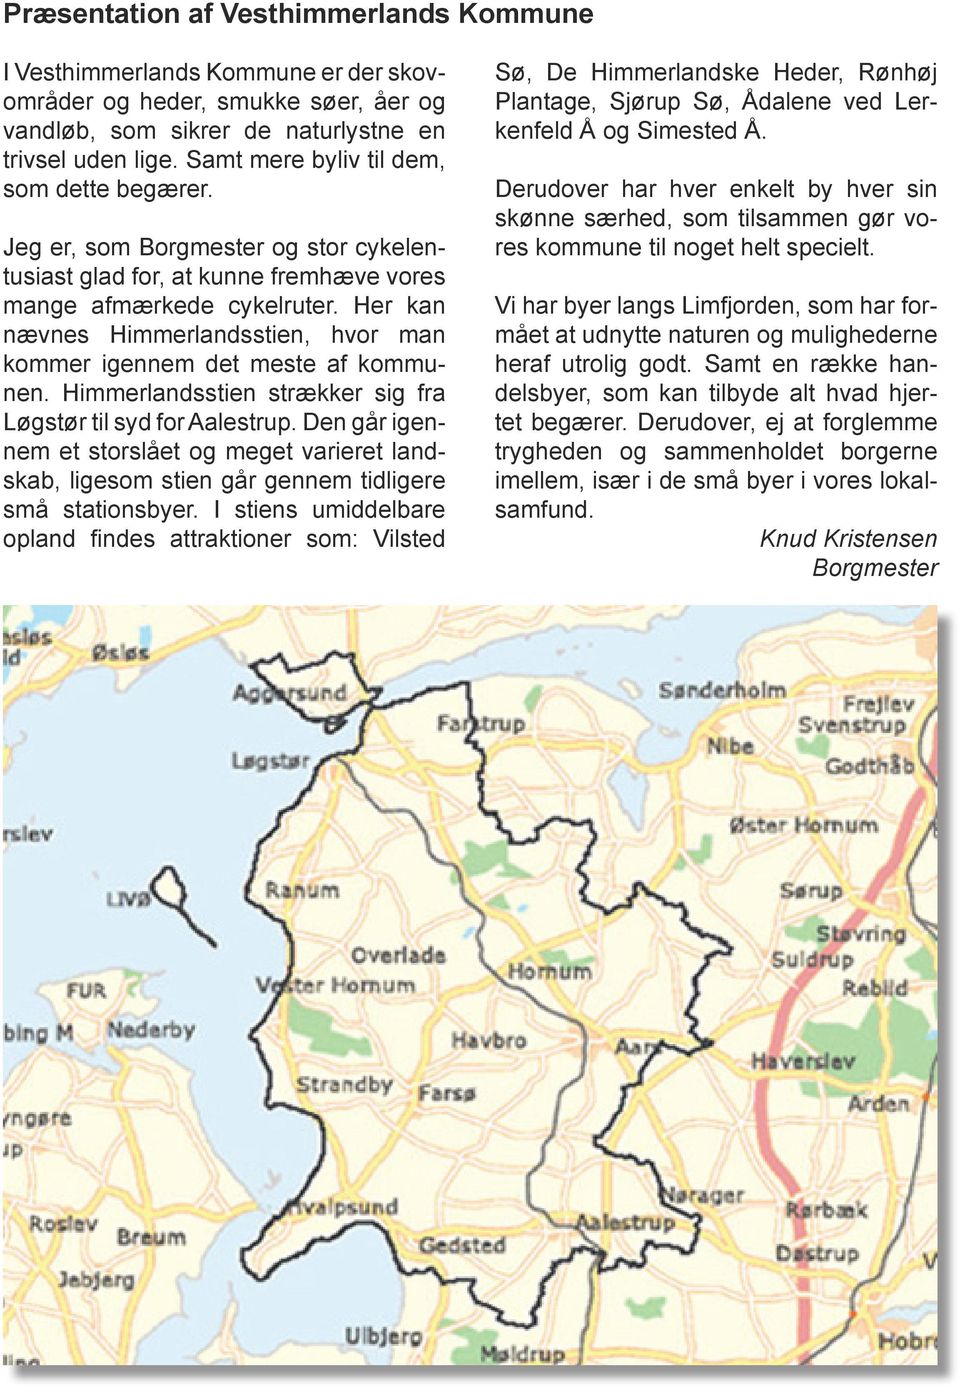 Her kan nævnes Himmerlandsstien, hvor man kommer igennem det meste af kommunen. Himmerlandsstien strækker sig fra Løgstør til syd for Aalestrup.